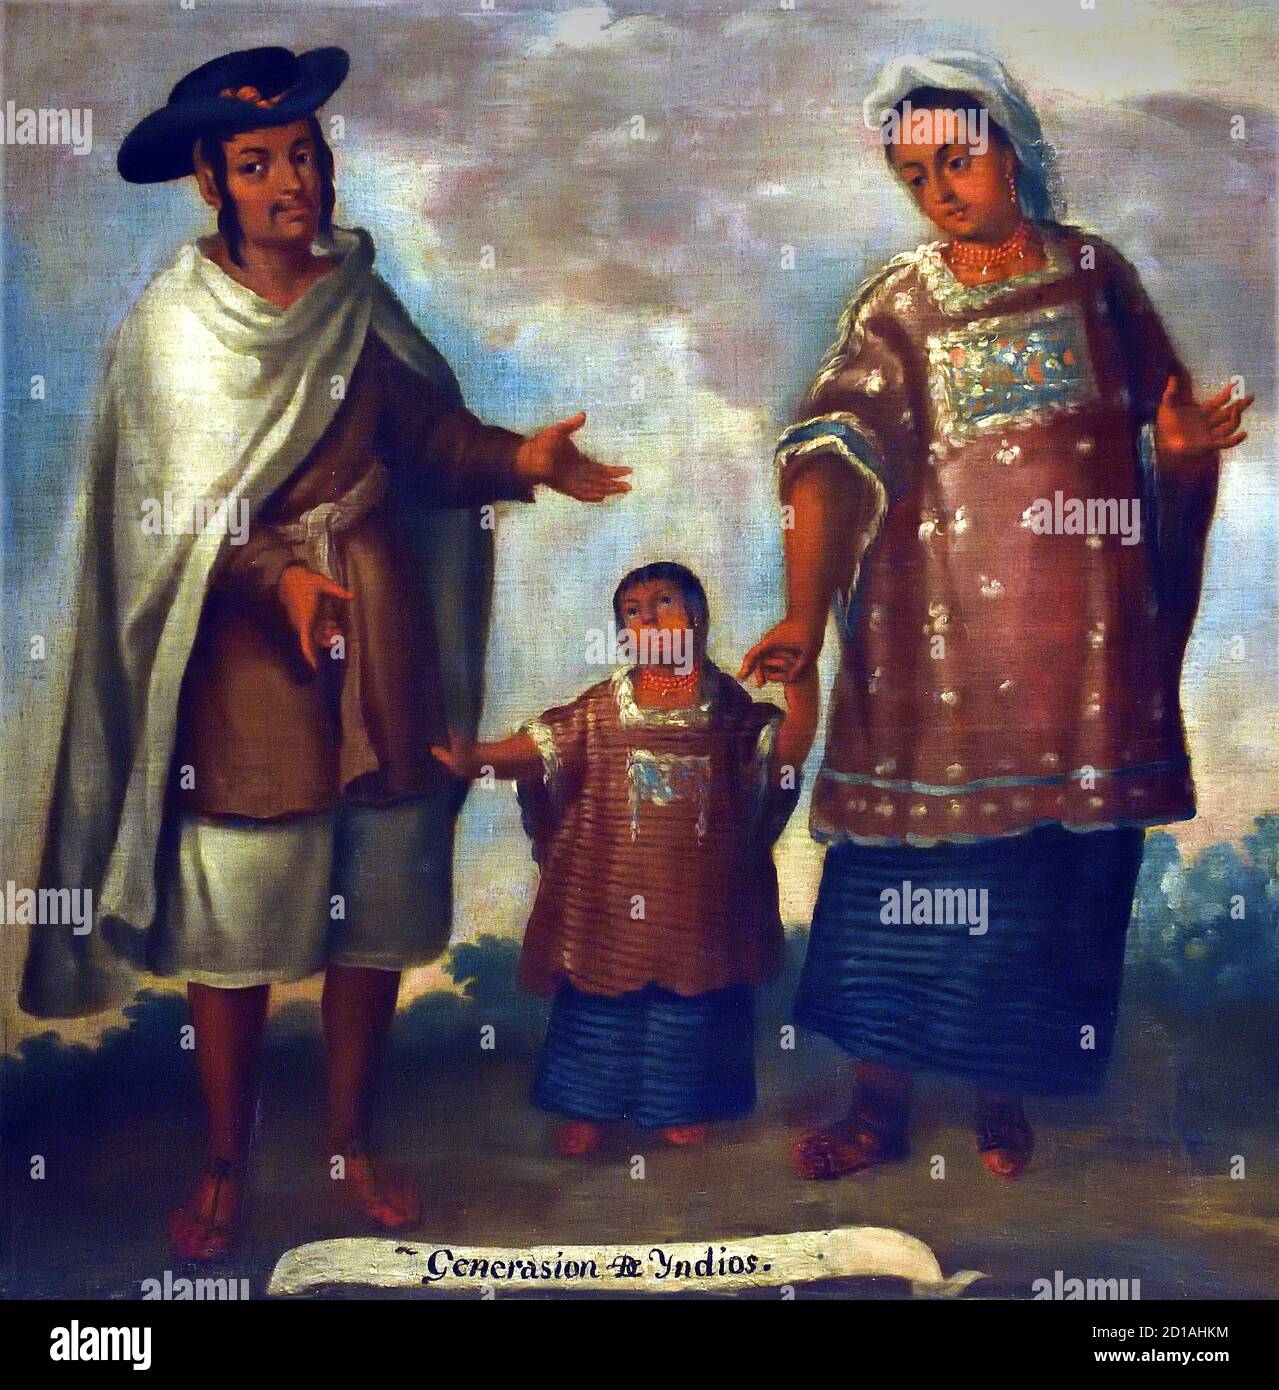 Luis Berrueco,1717-1749 Mexique 18ème siècle ( Luis Berrueco vient d'une dynastie de peintres à Puebla et a eu un grand nombre d'adeptes) chacune des scènes de miscegenation est identifié avec des inscriptions faisant référence à leur degré de miscegenation basée sur les tribus indigènes, européennes et africaines, Caractéristique d'un genre pictural développé dans la Viceroyalty de la Nouvelle-Espagne au cours du XVIIIe siècle. . Ce genre est connu sous le nom de 'caste painting' Banque D'Images